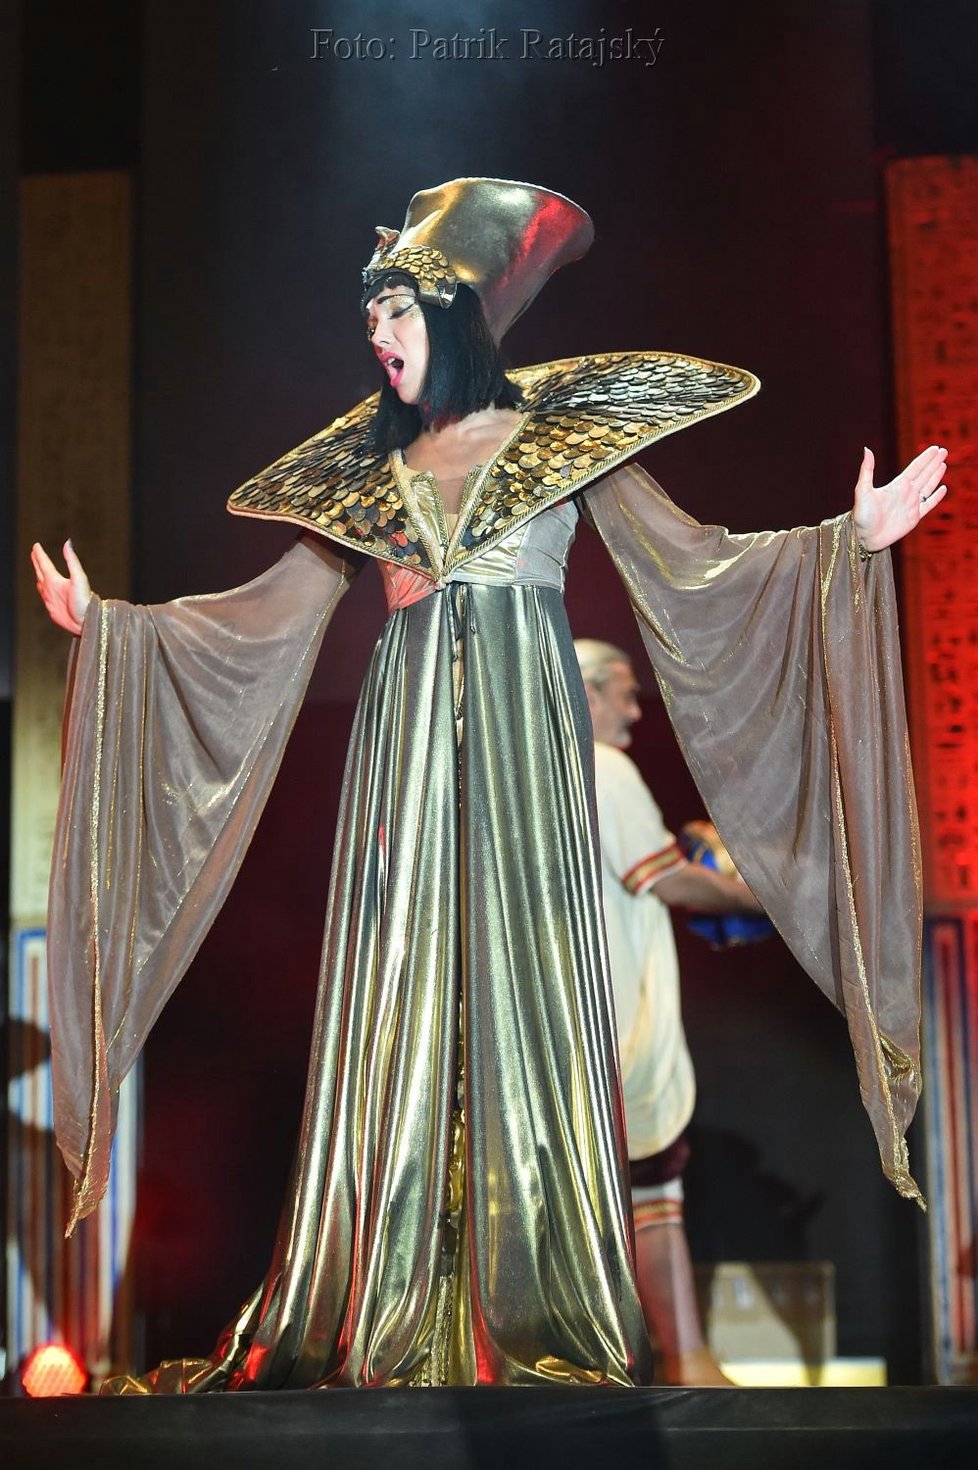 Kamila Nývltová v muzikálu Kleopatra